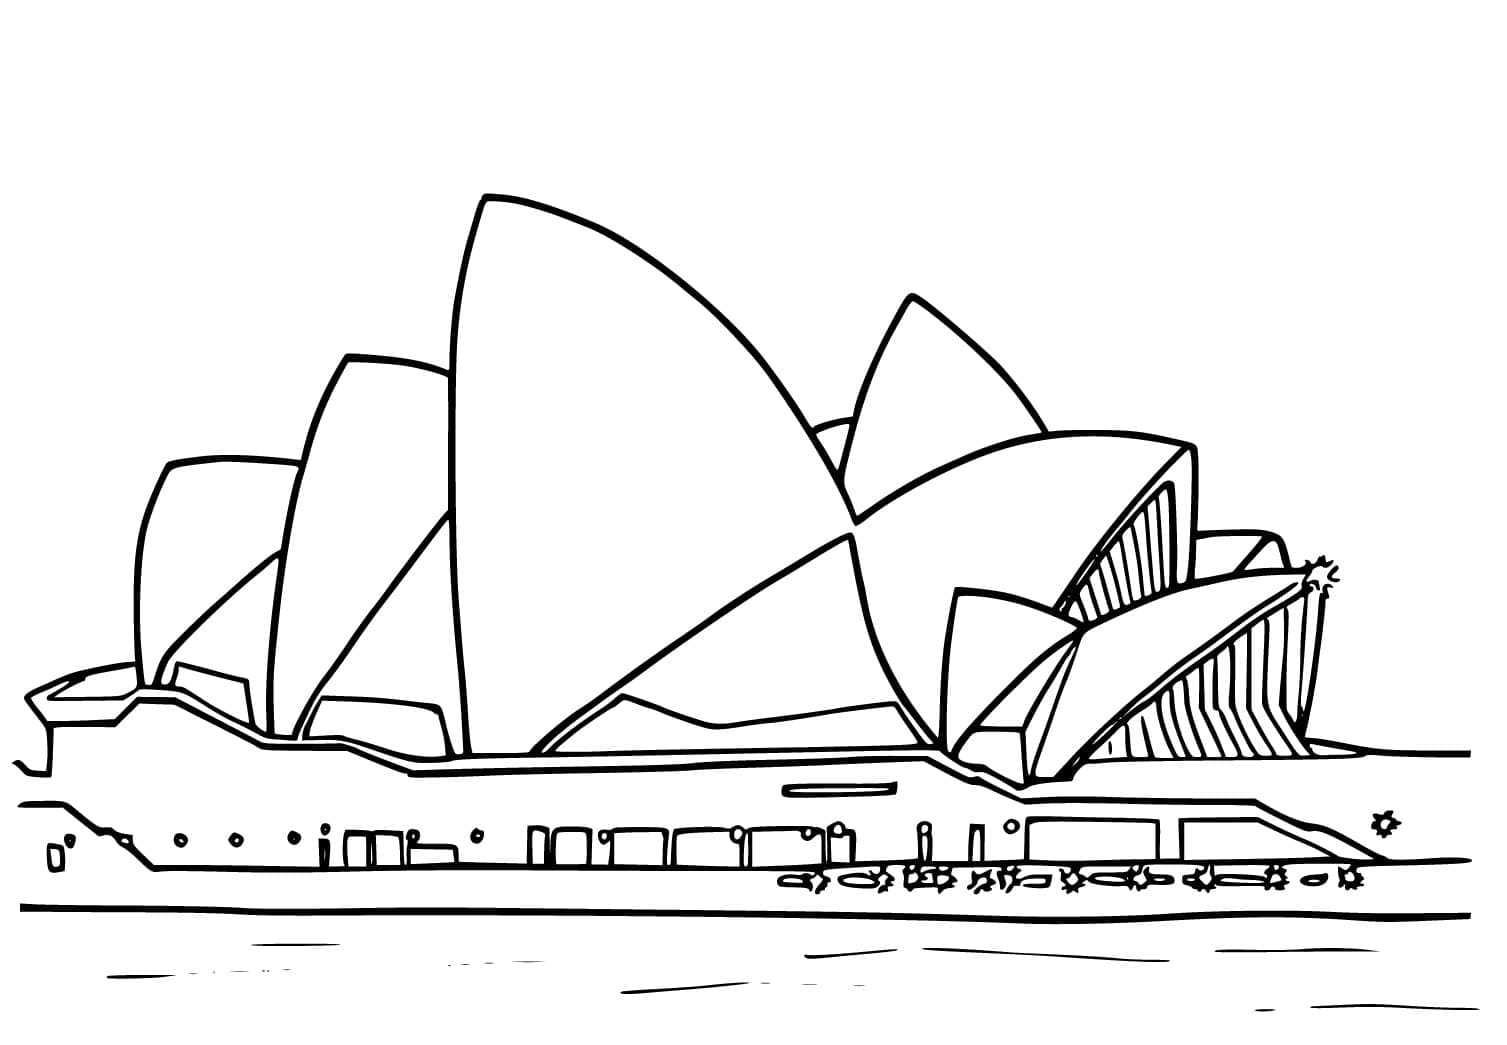 L’opéra de Sydney coloring page